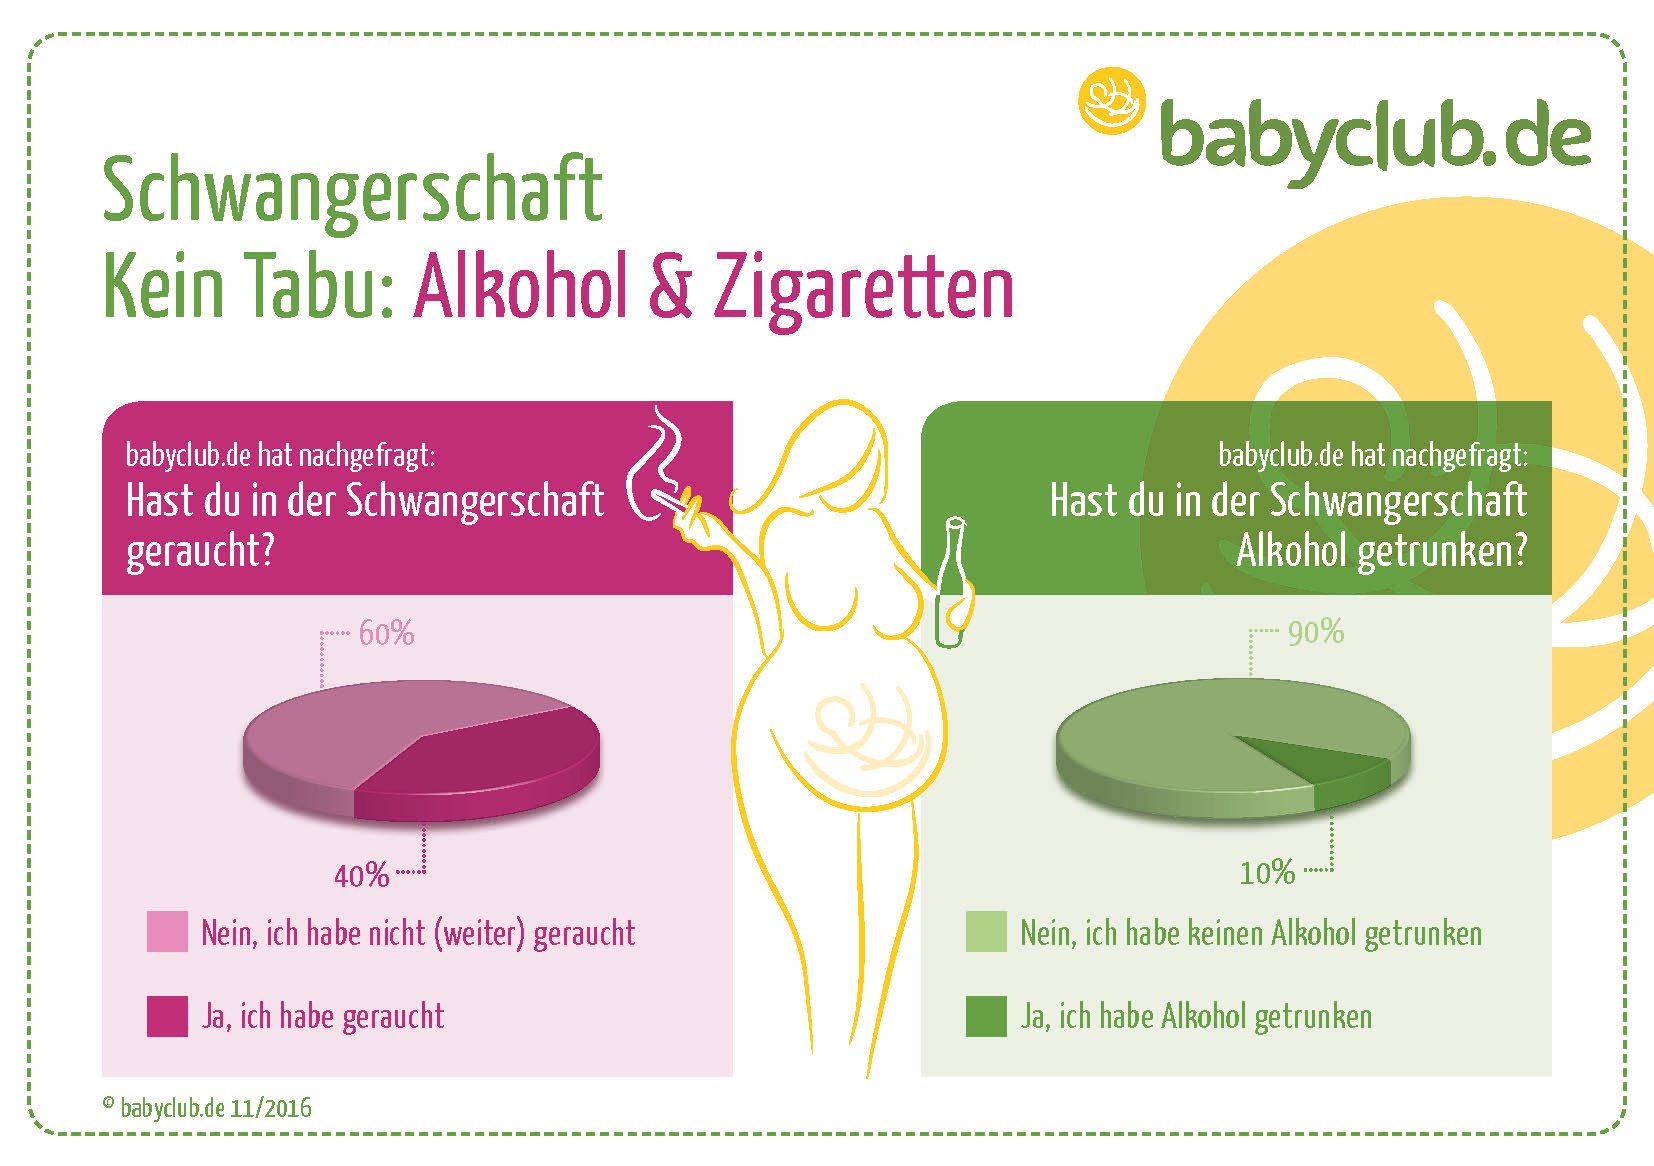 rauchen schmeckt nicht mehr schwanger - hlthee.com.